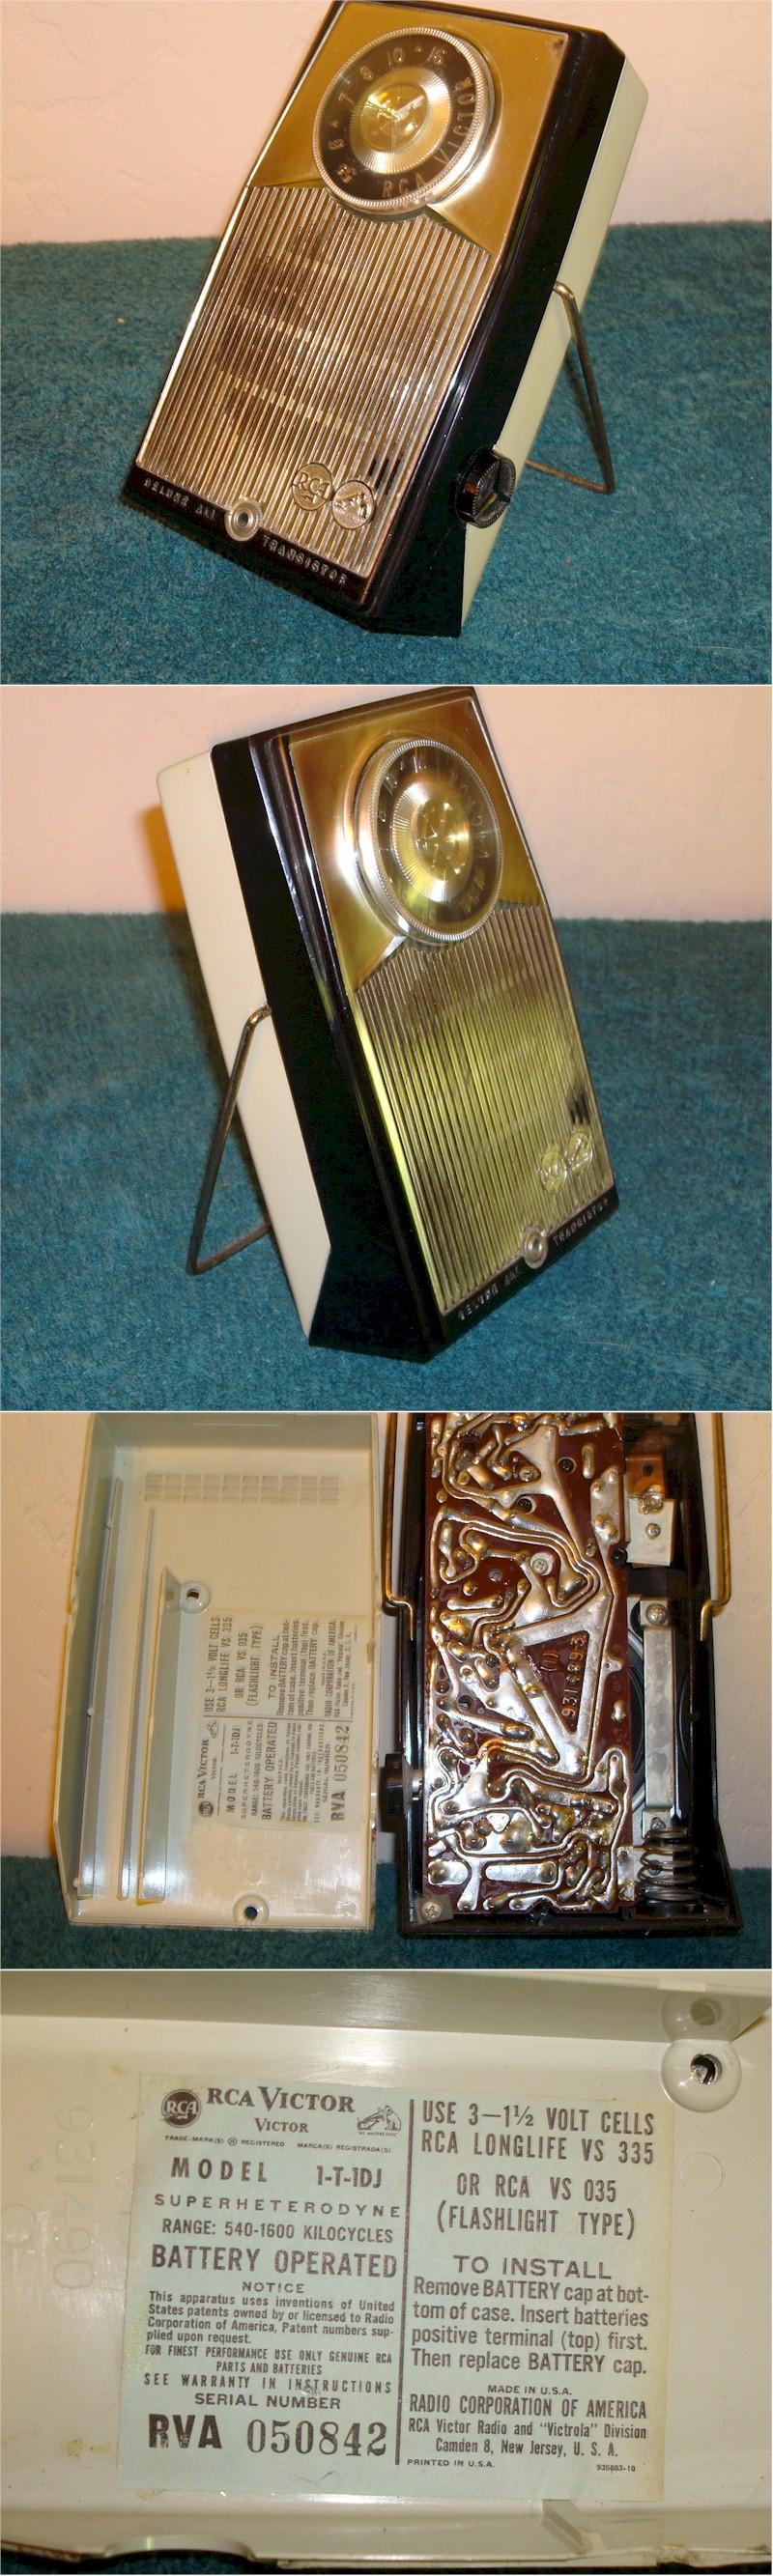 RCA 1-T-1DJ Pocket Transistor (1960)